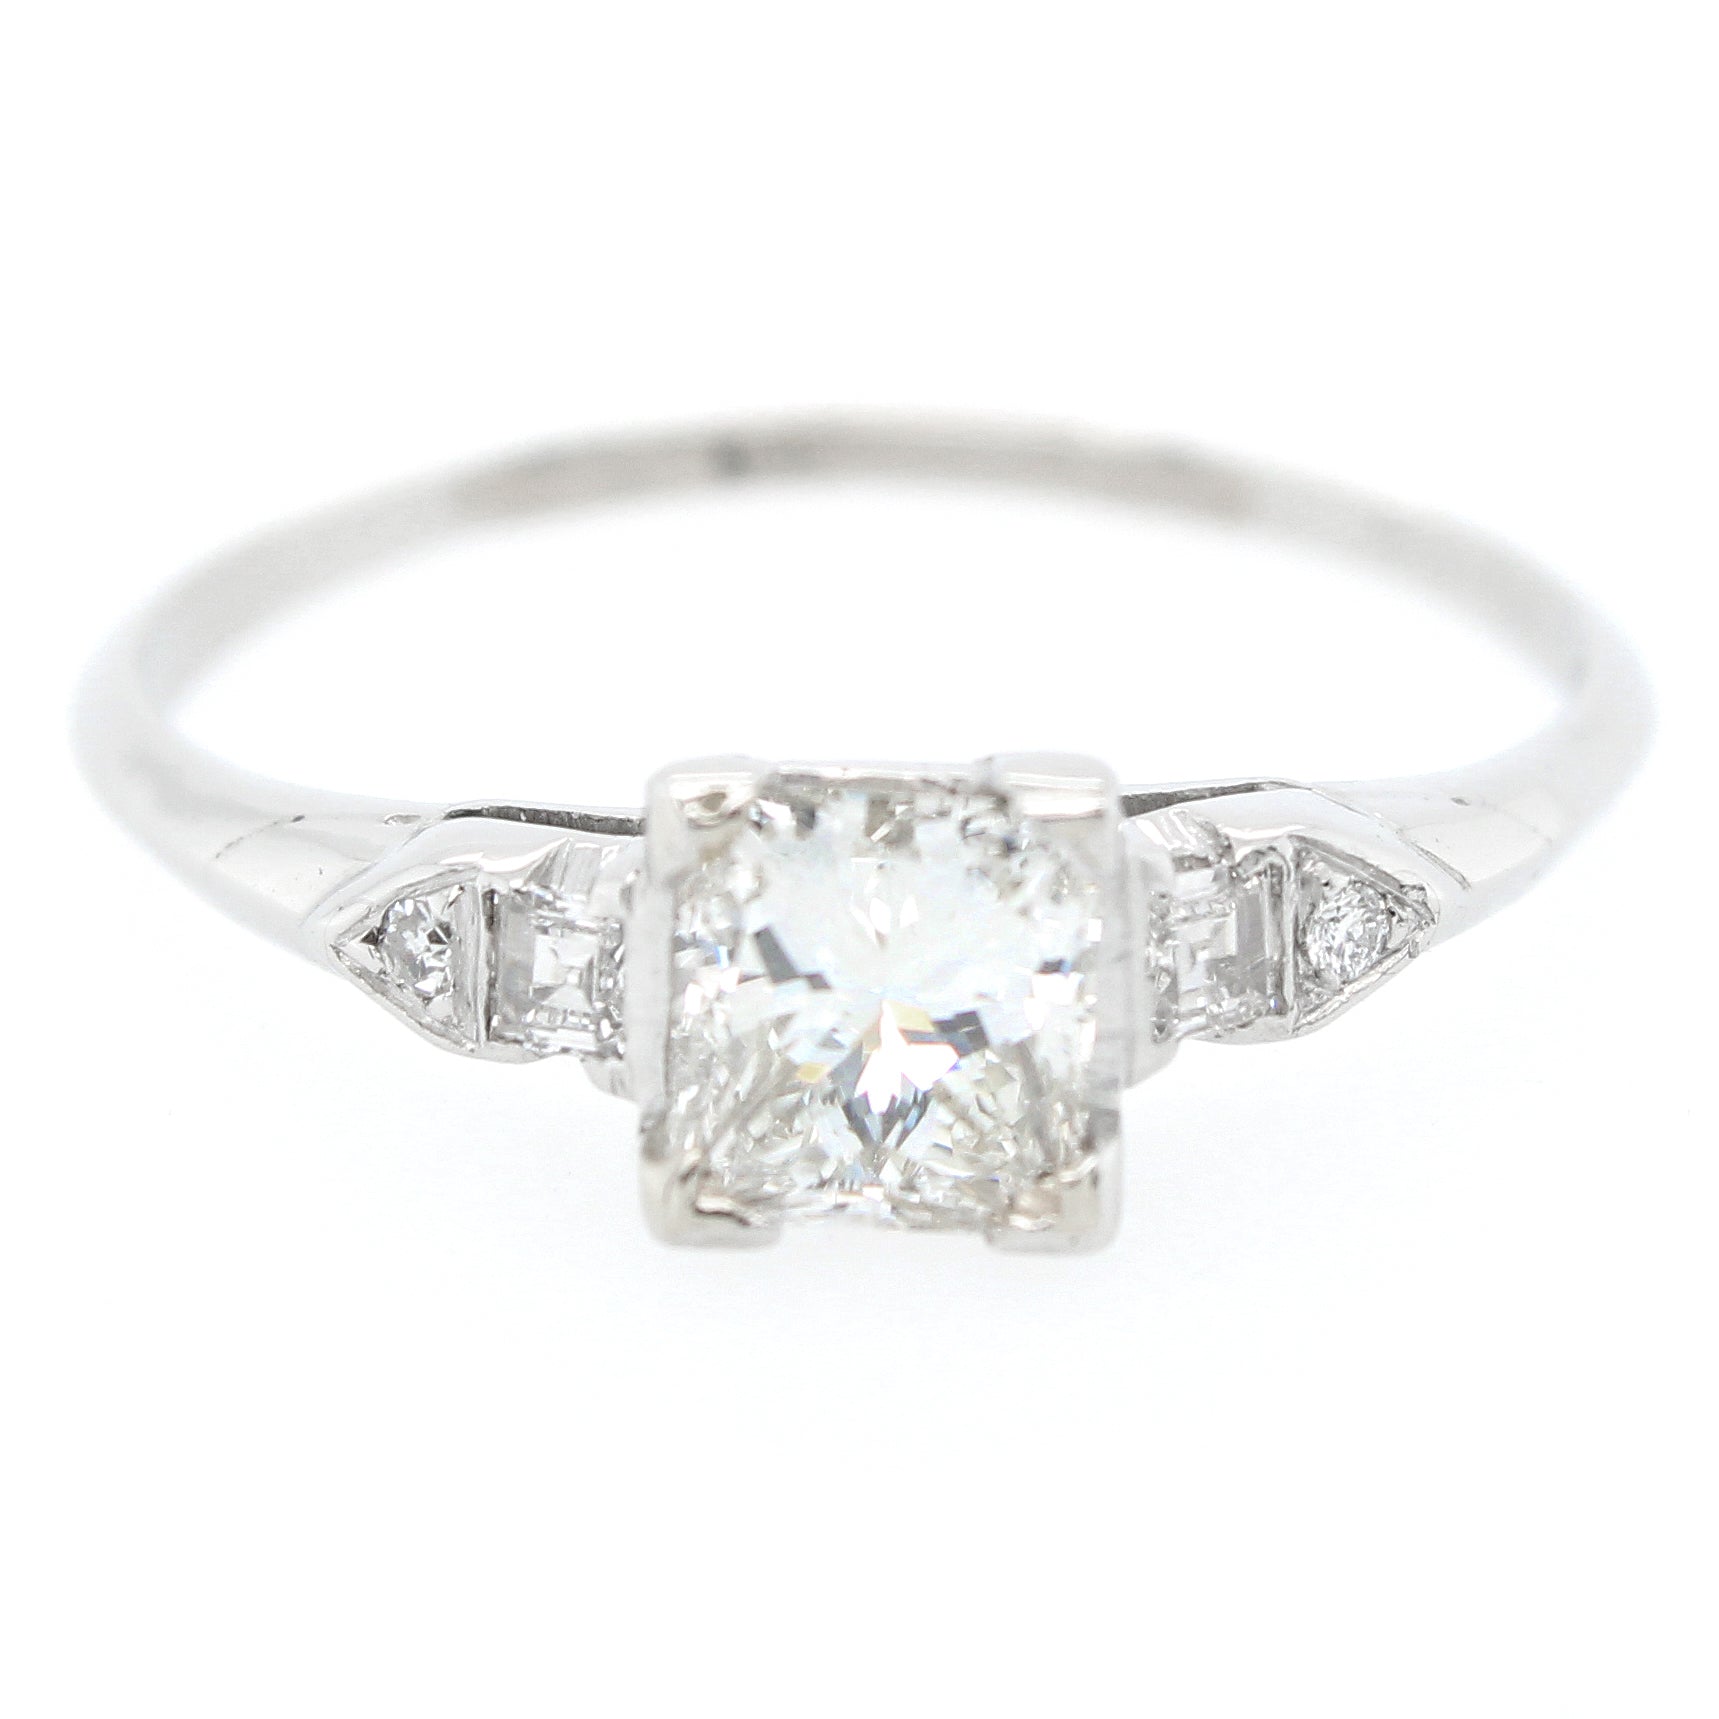 Antique 0.60ctw Diamond Square Engagement Ring in Platinum | Size 5.50